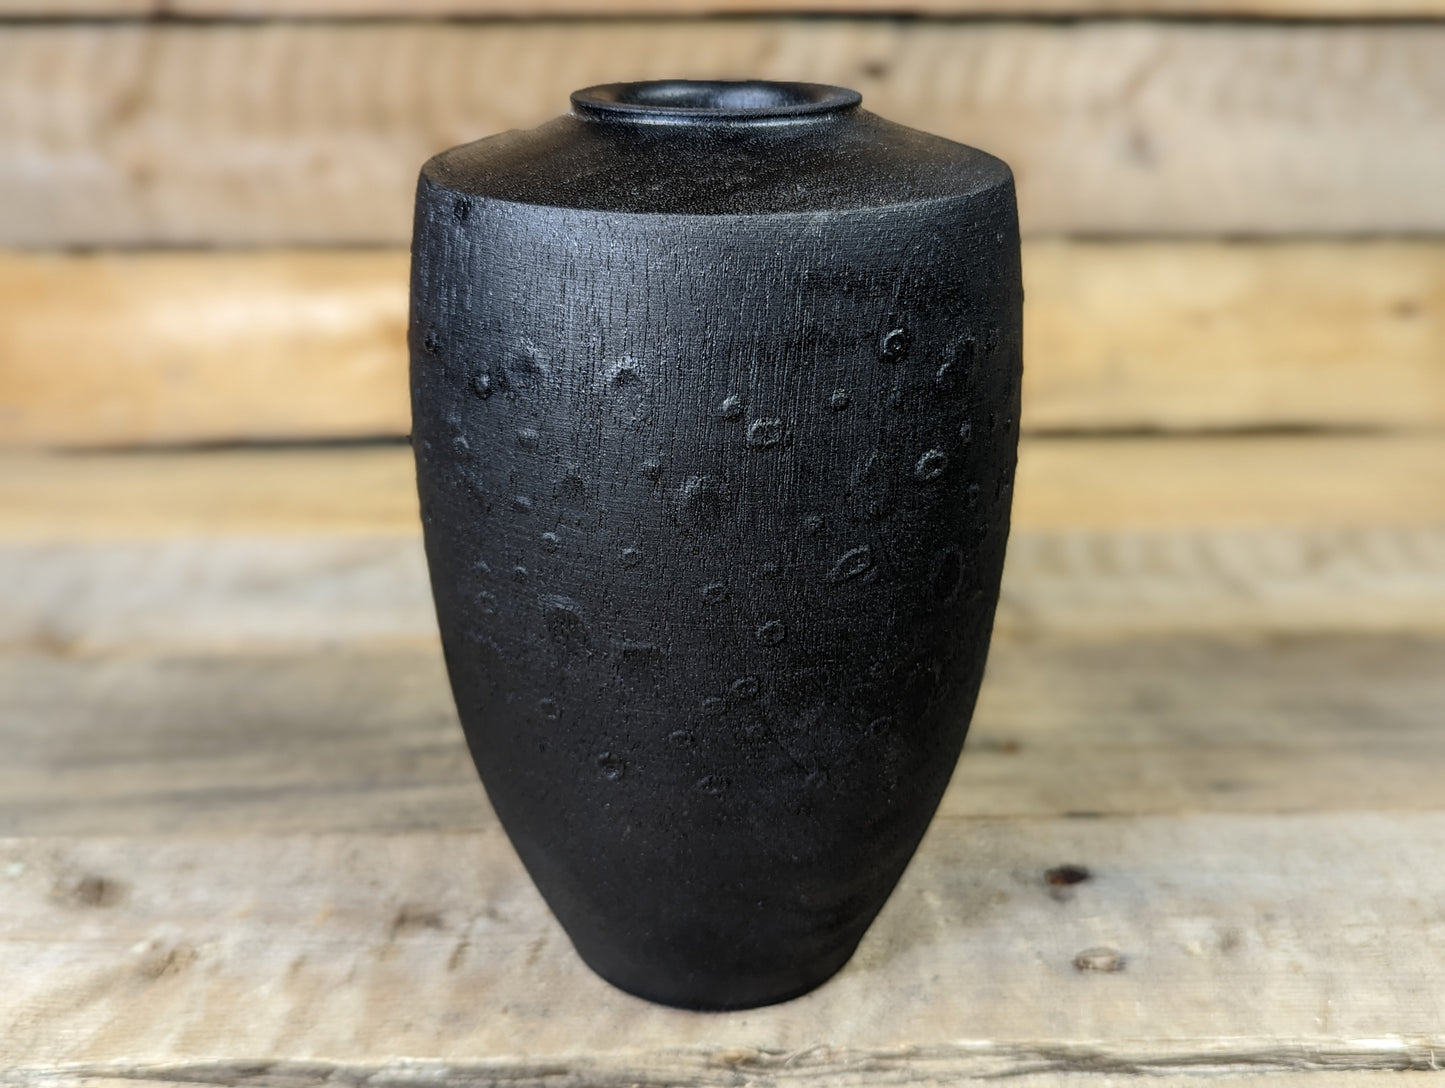 Textured dry vase